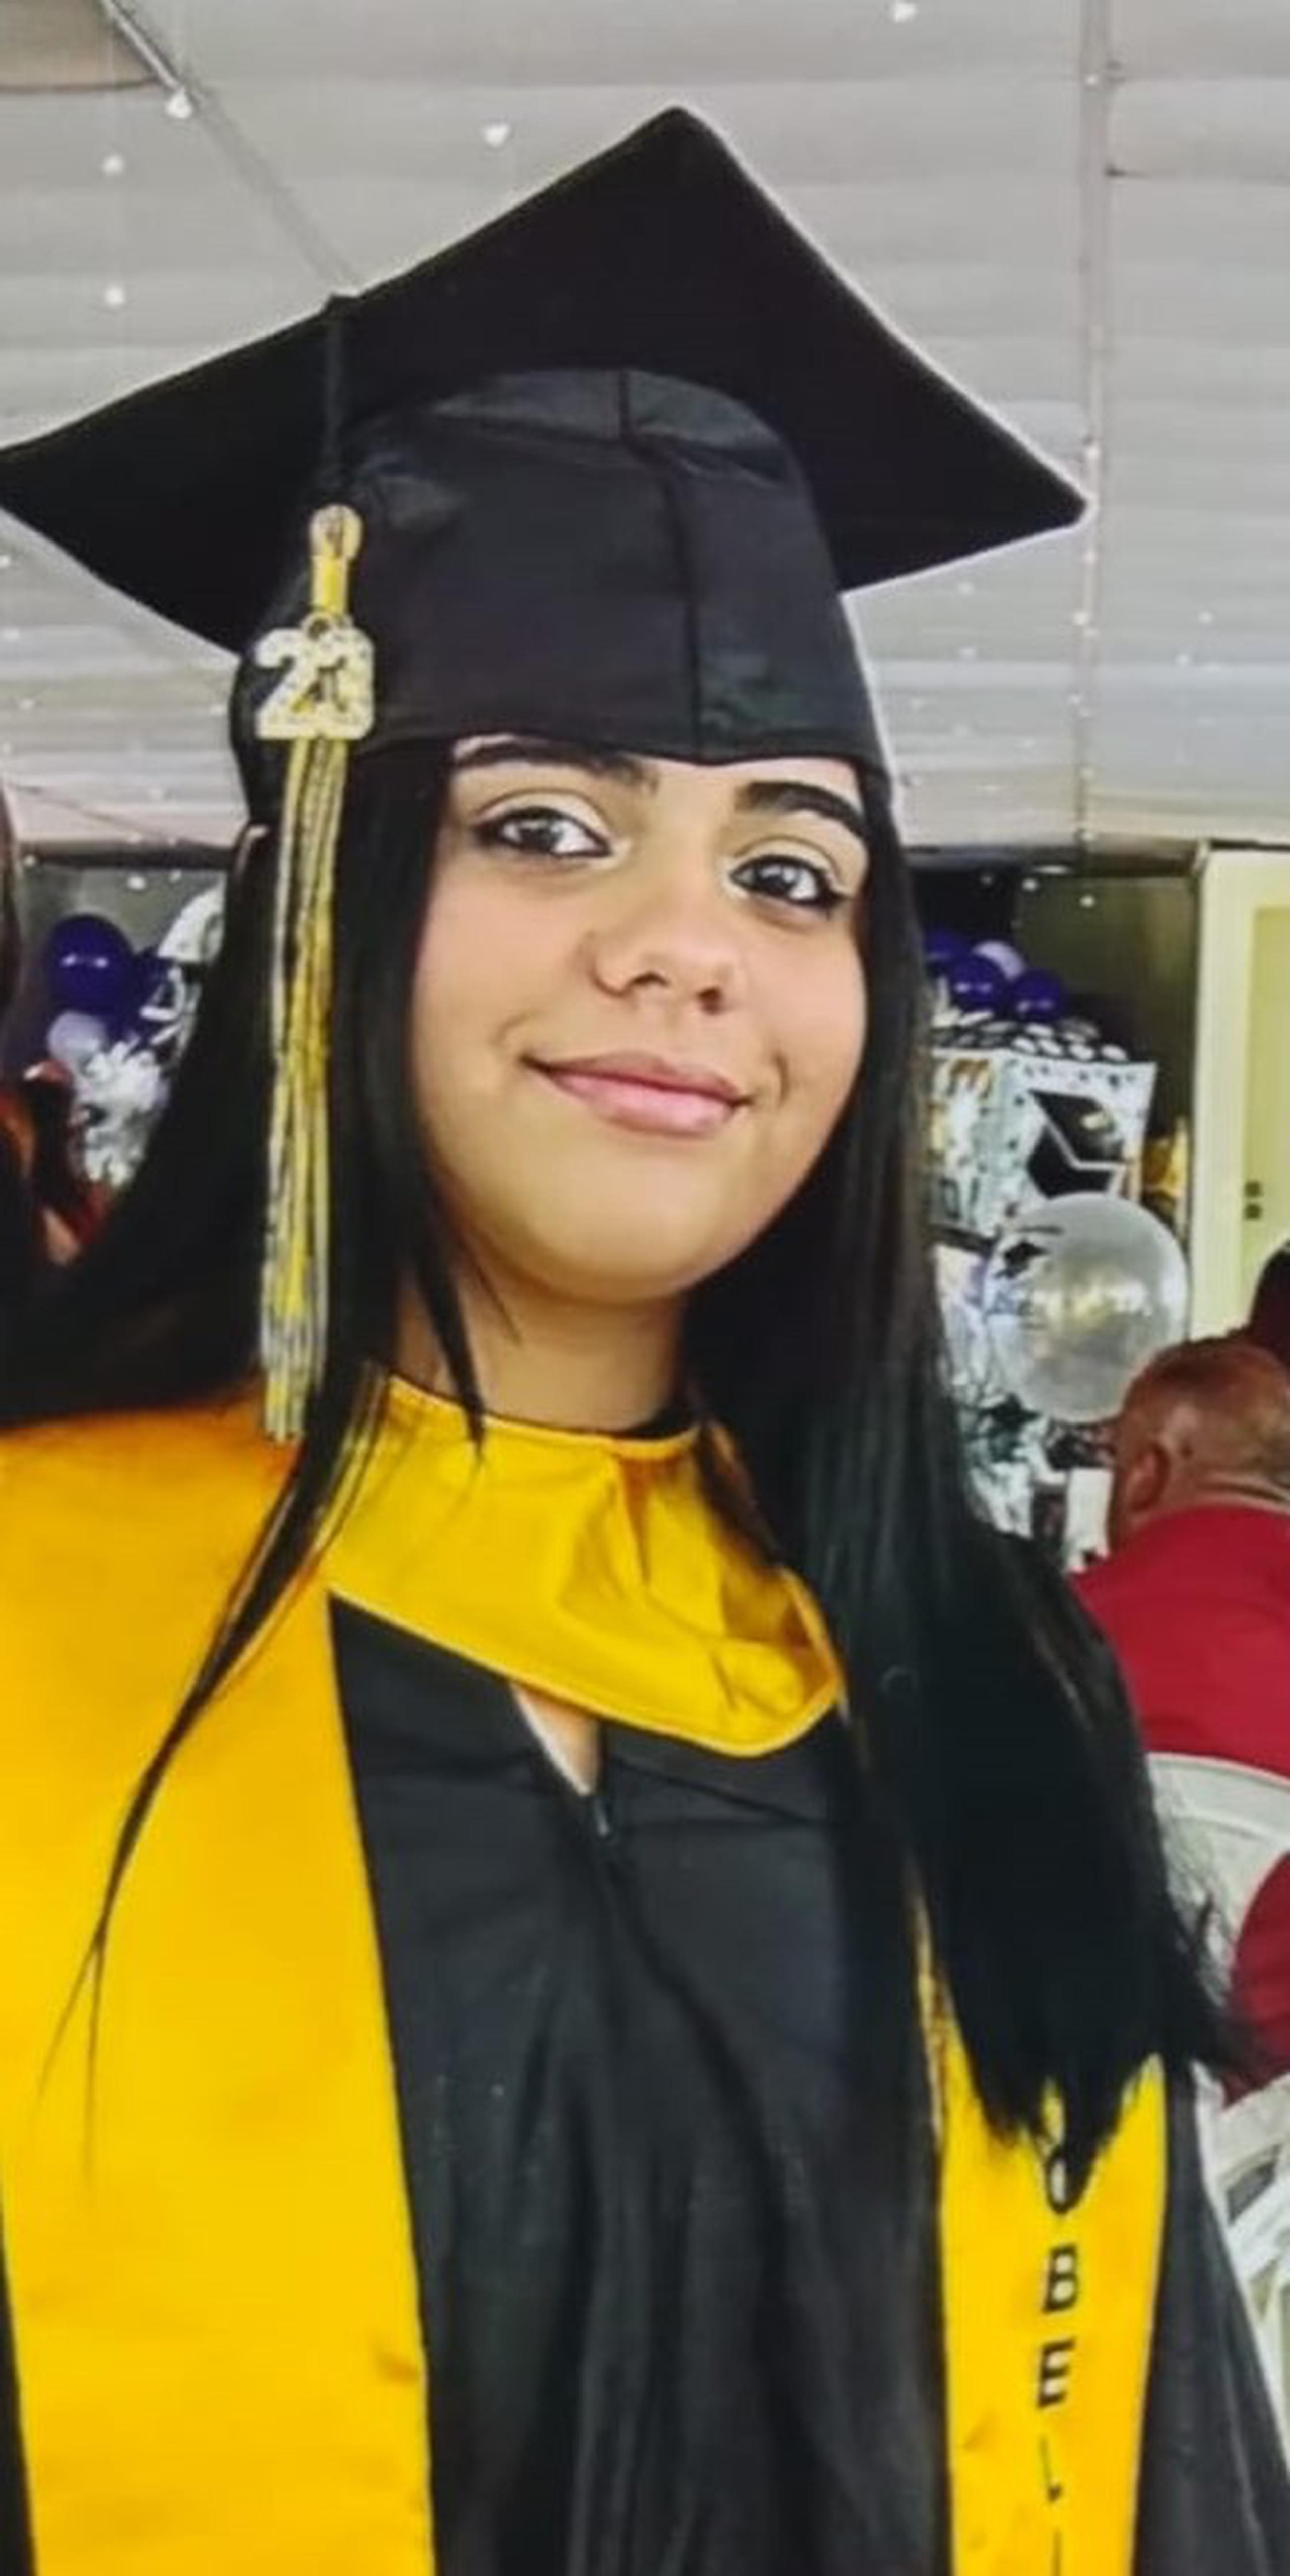 Sujeily Rosario Bassat de 14 años, vecina de Aguada, fue reportada desaparecida el lunes, 27 de noviembre, por su progenitora.